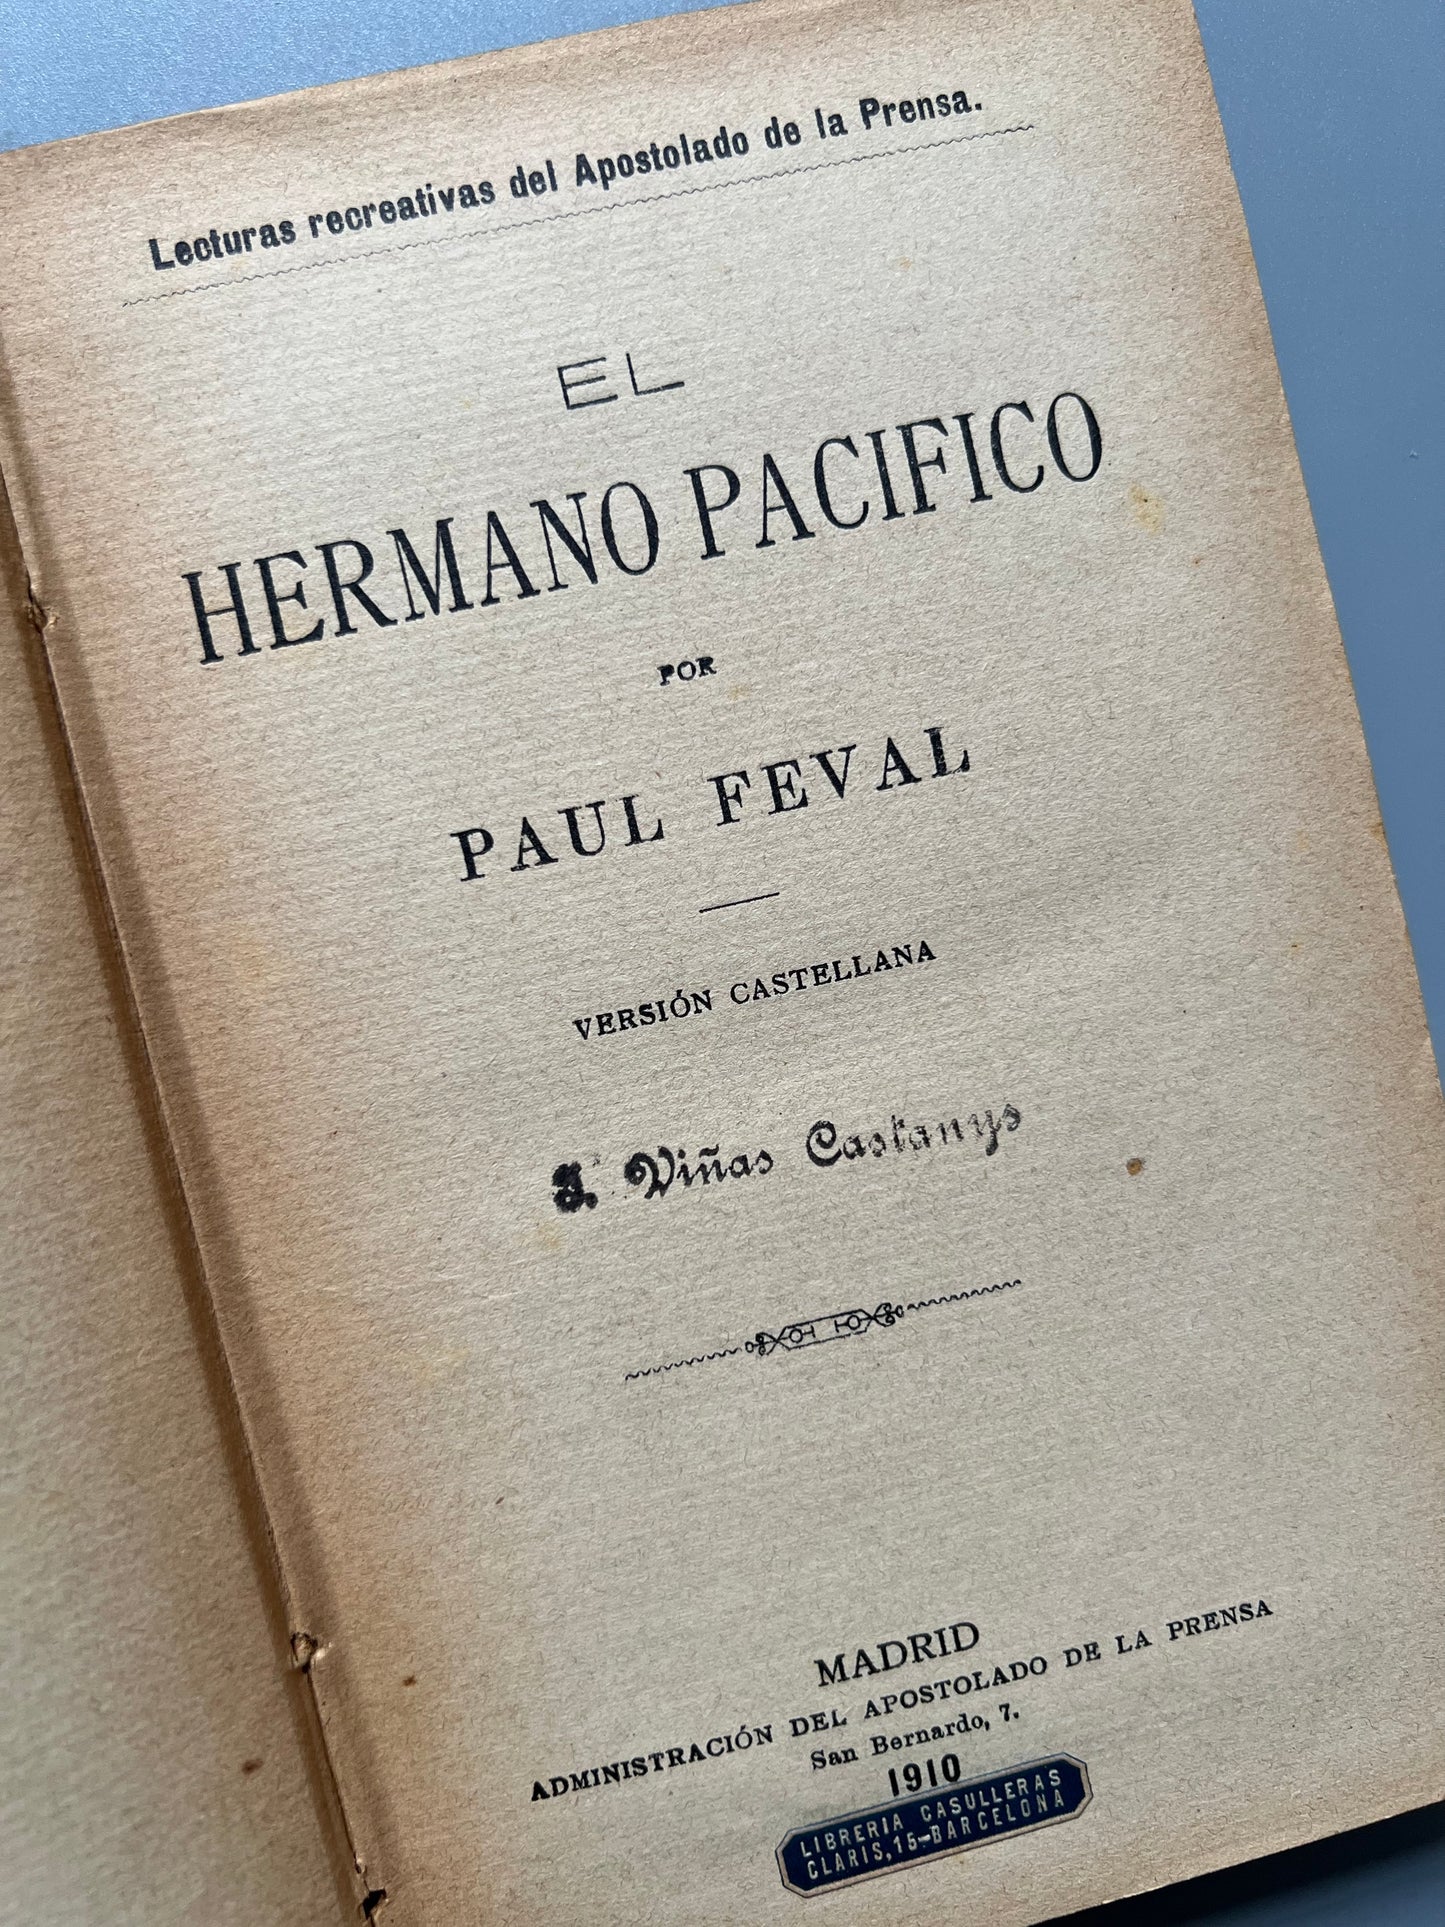 El hermano pacífico, Paul Feval - Apostolado de la prensa, 1910